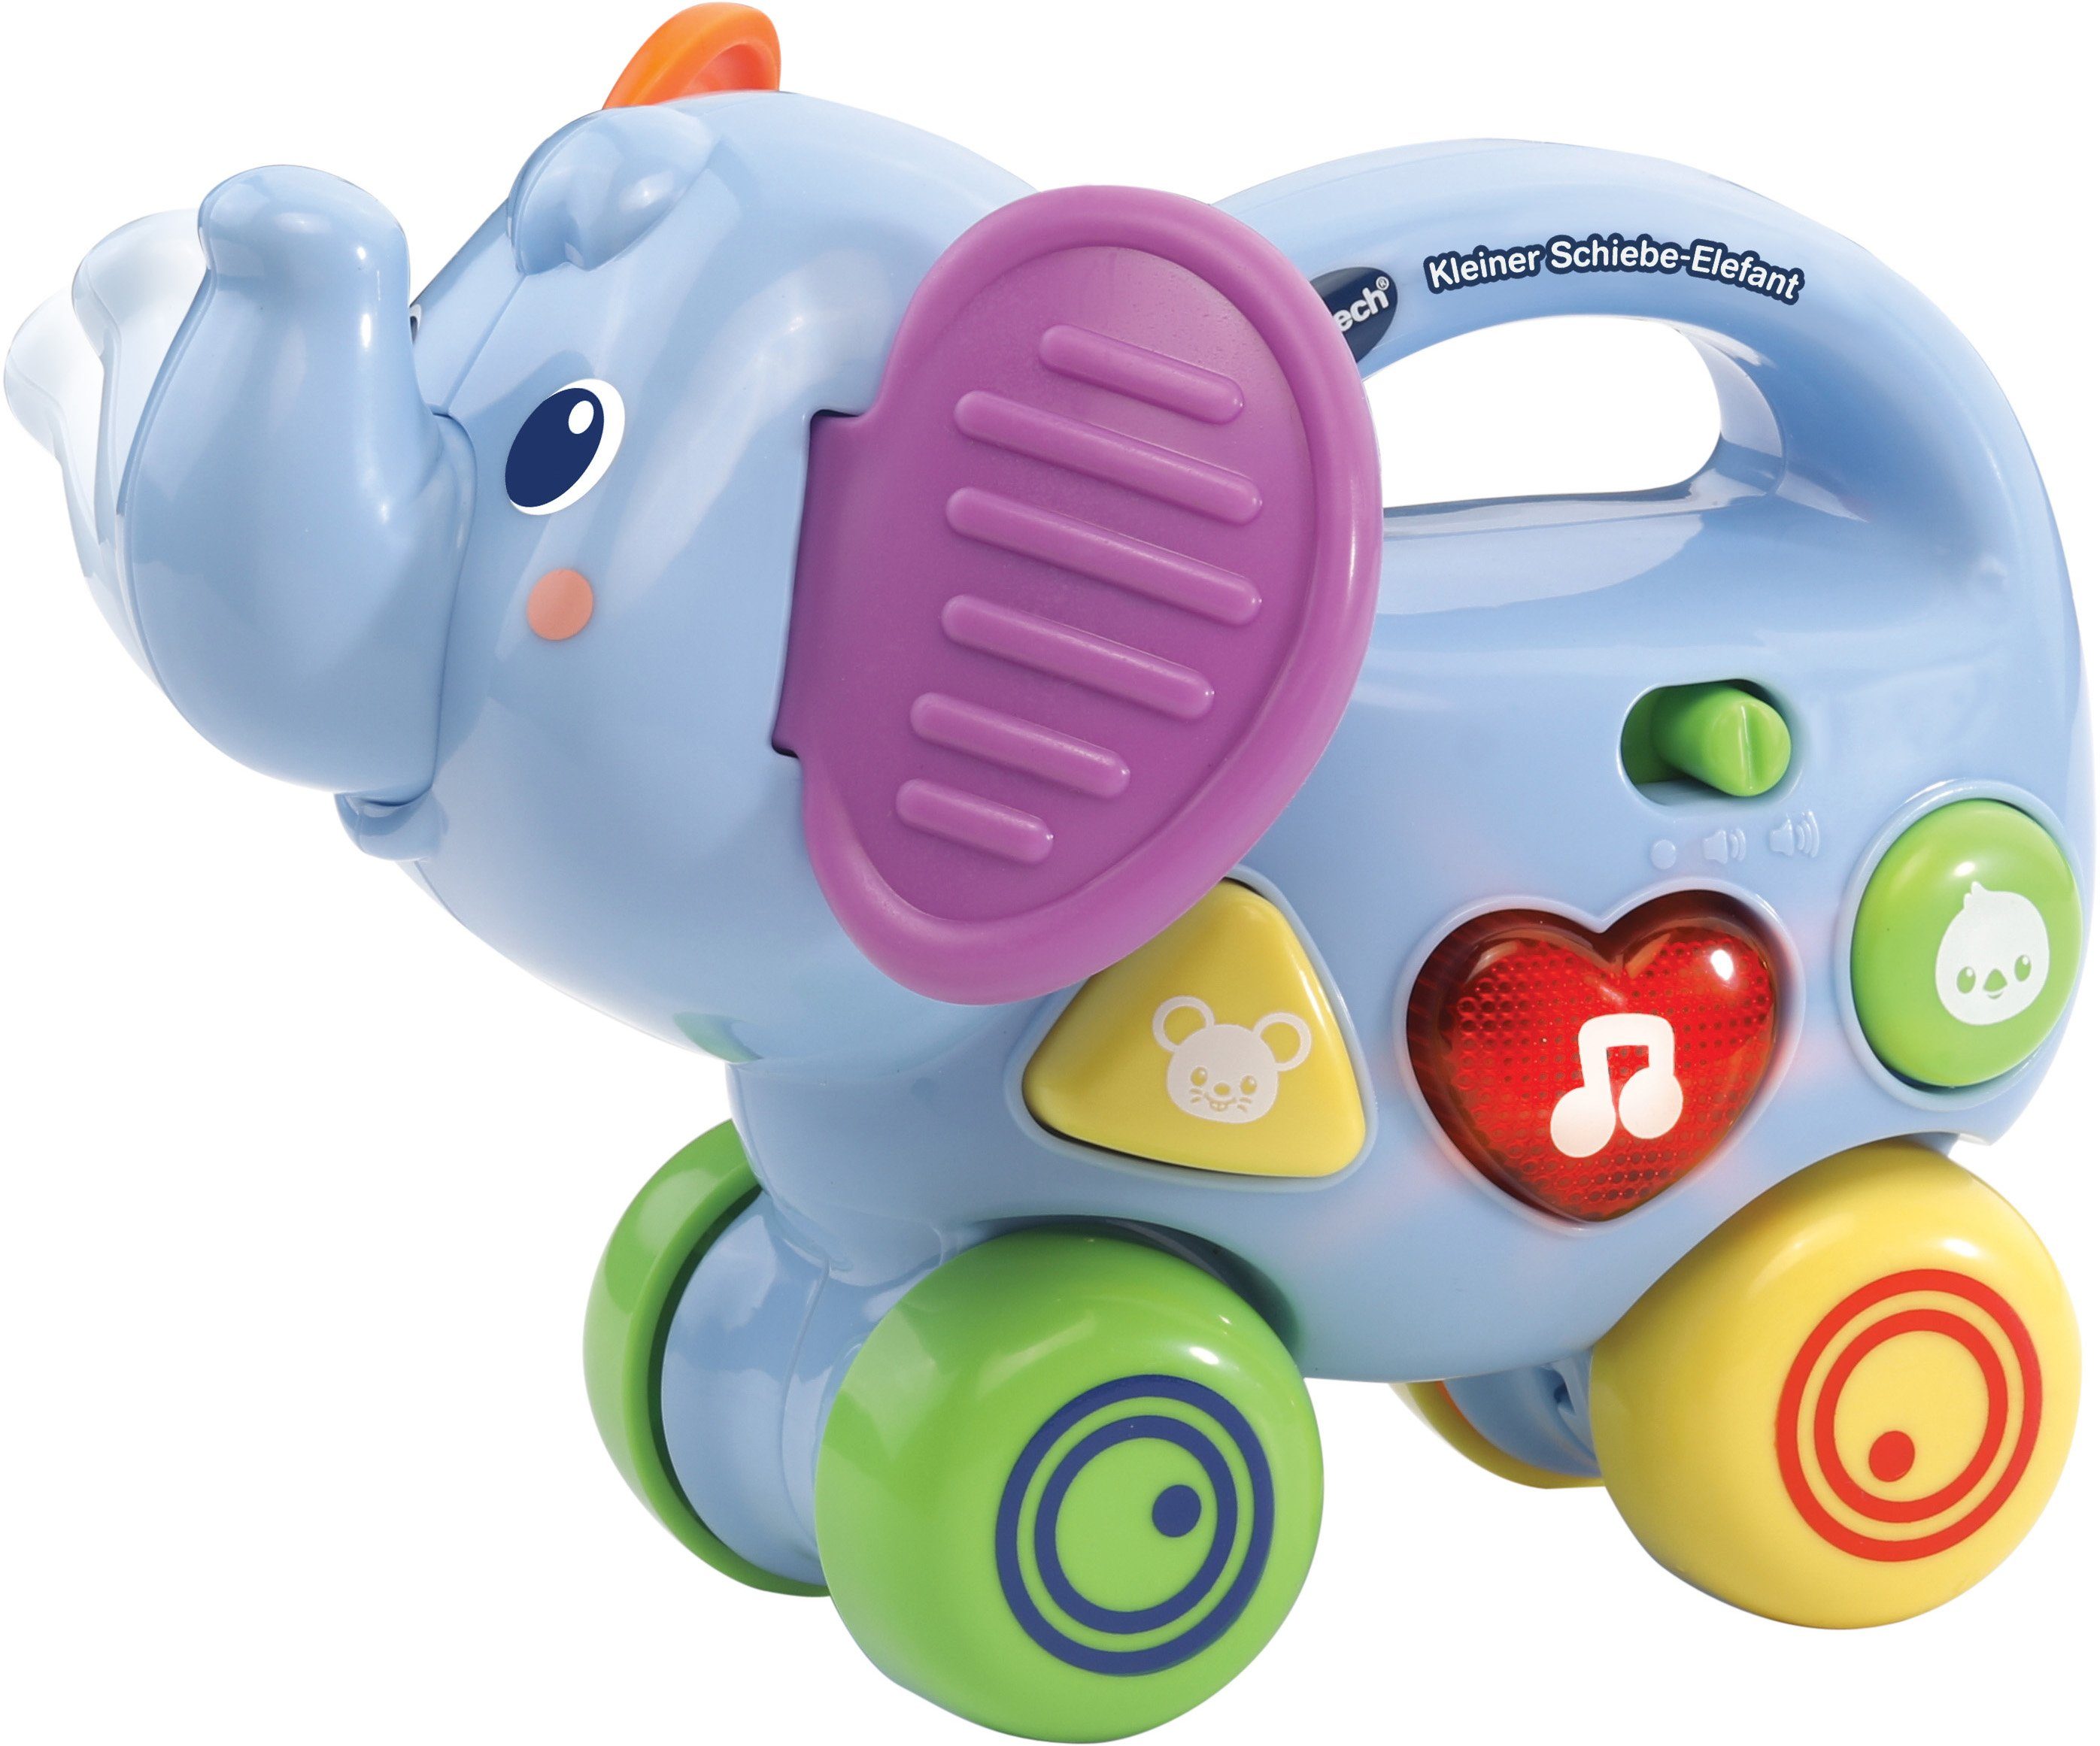 Vtech® Lernspielzeug VTechBaby, Kleiner Schiebe-Elefant, mit Sound